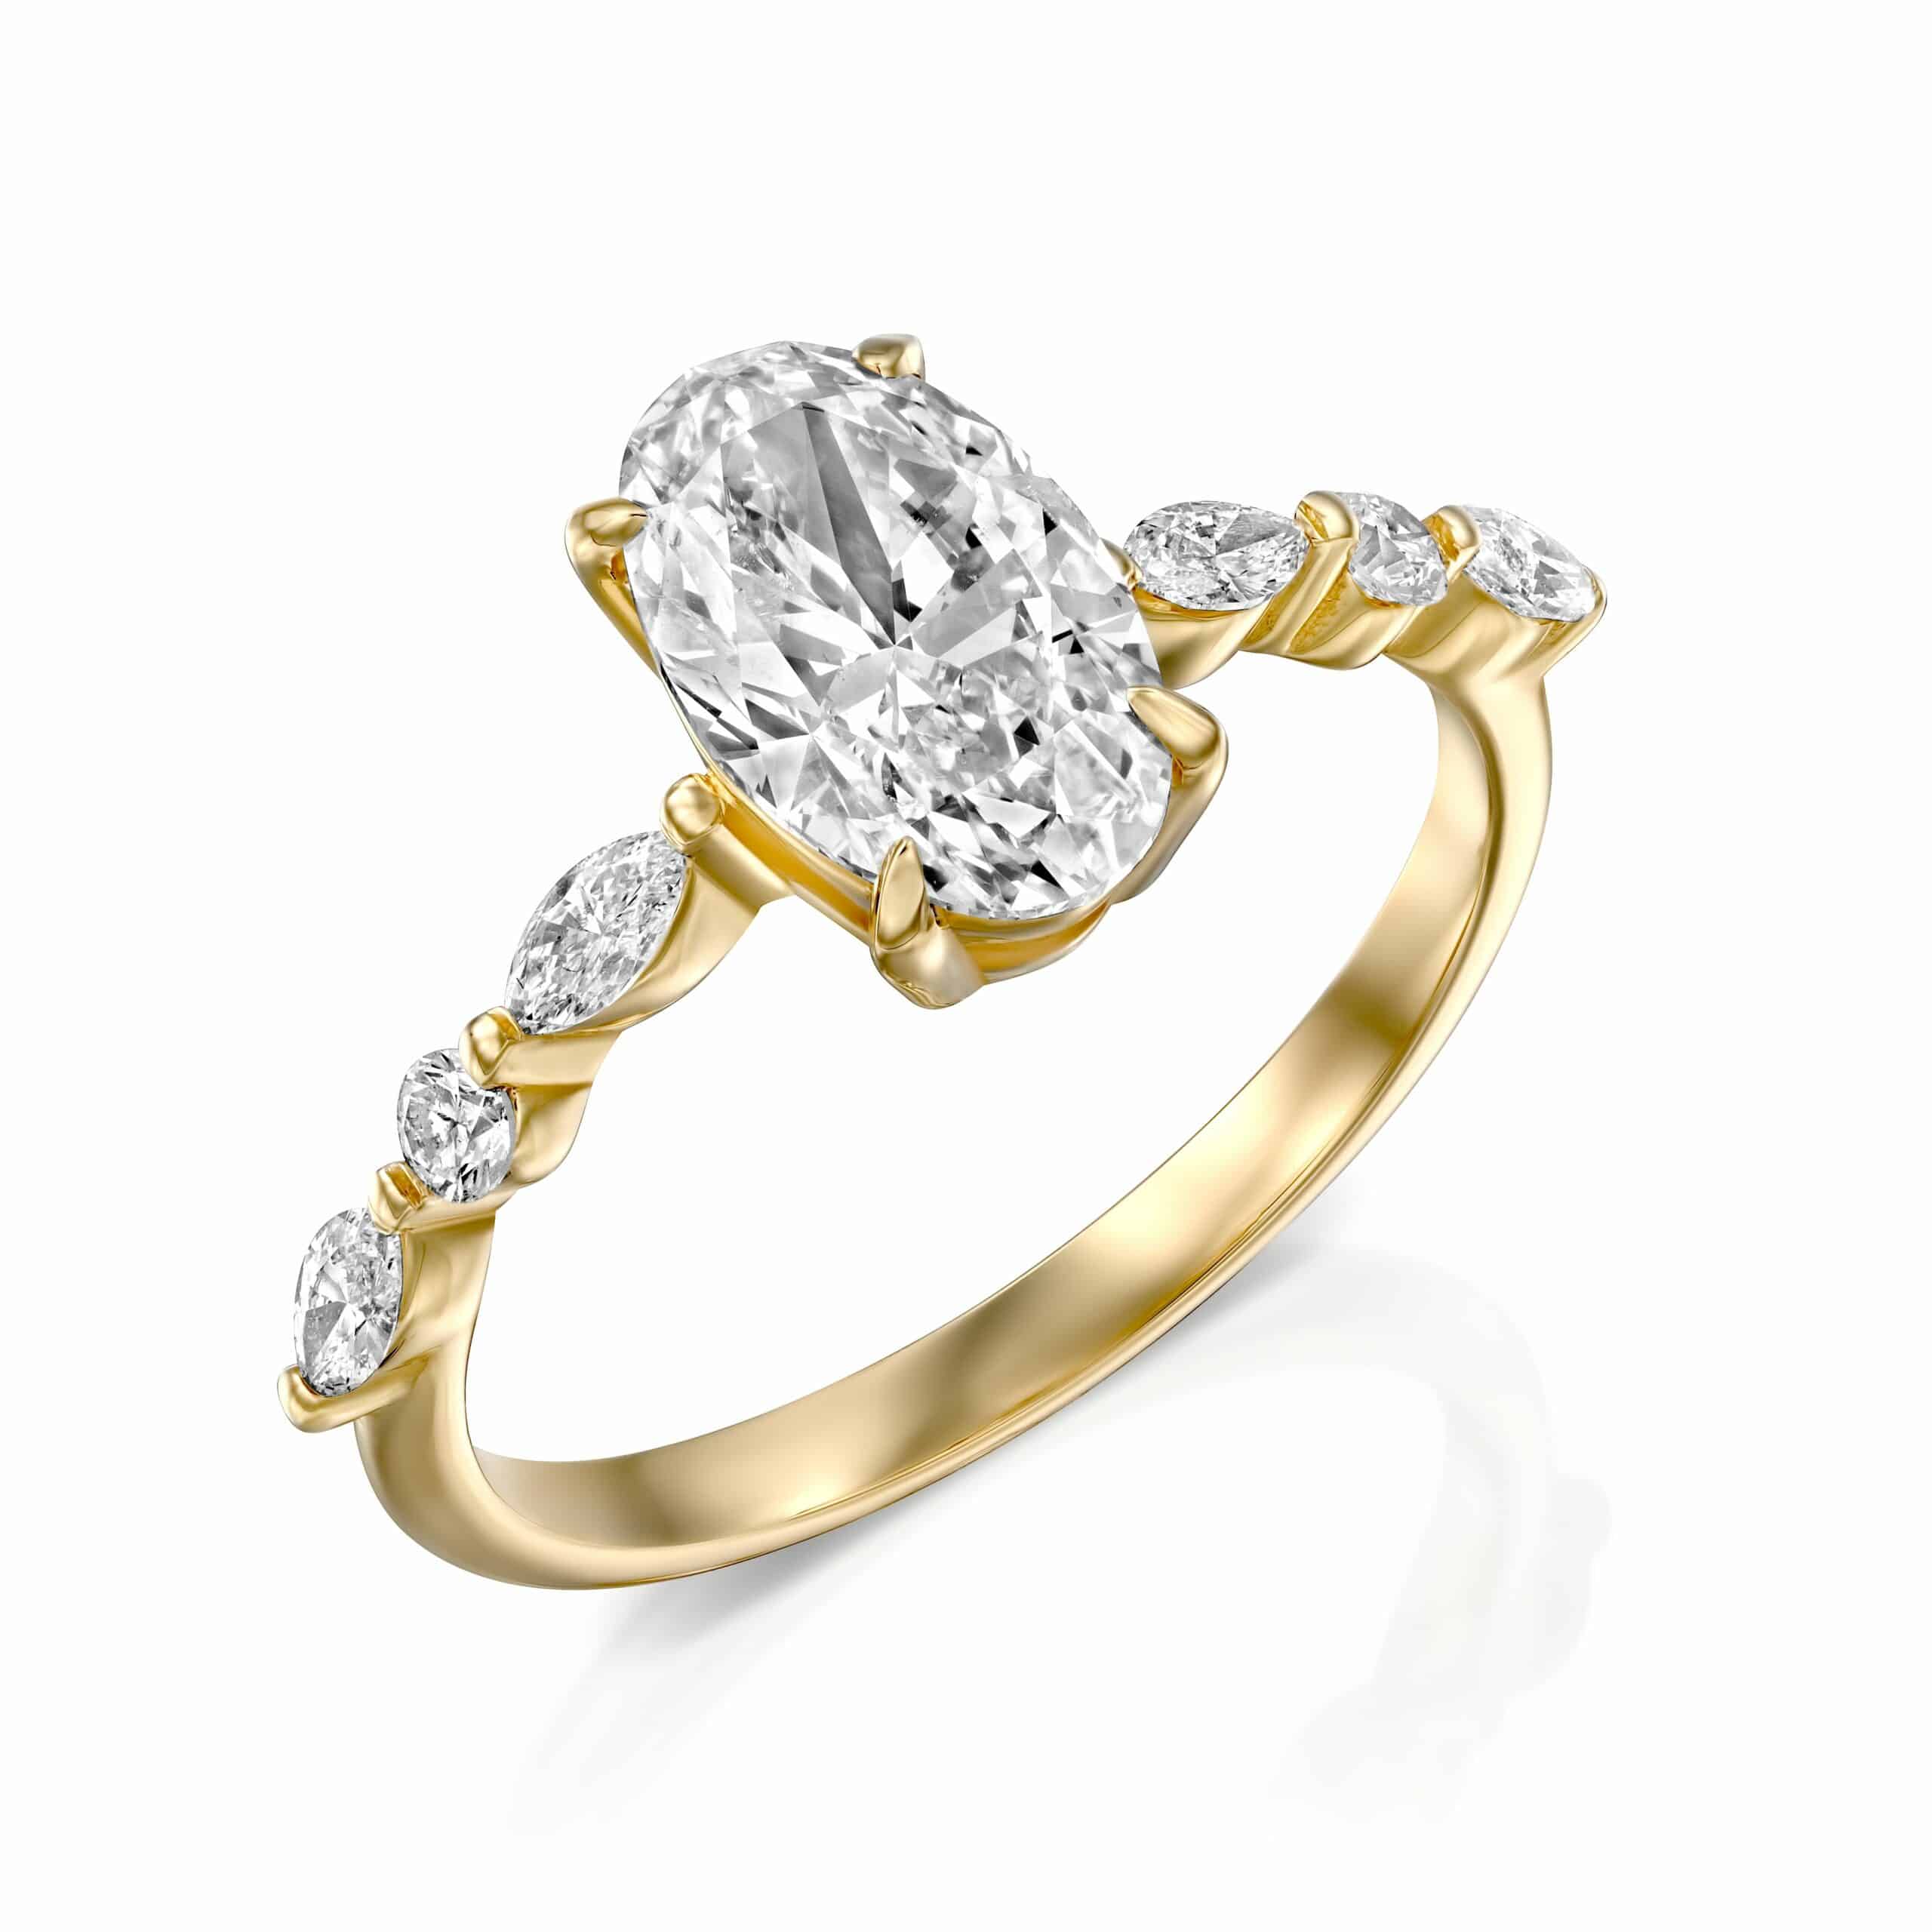 טבעת זהב אלגנטית הכוללת יהלום מרכזי בחיתוך אובלי כשלצידו יהלומים עגולים קטנים יותר וחיתוך מרקיז.